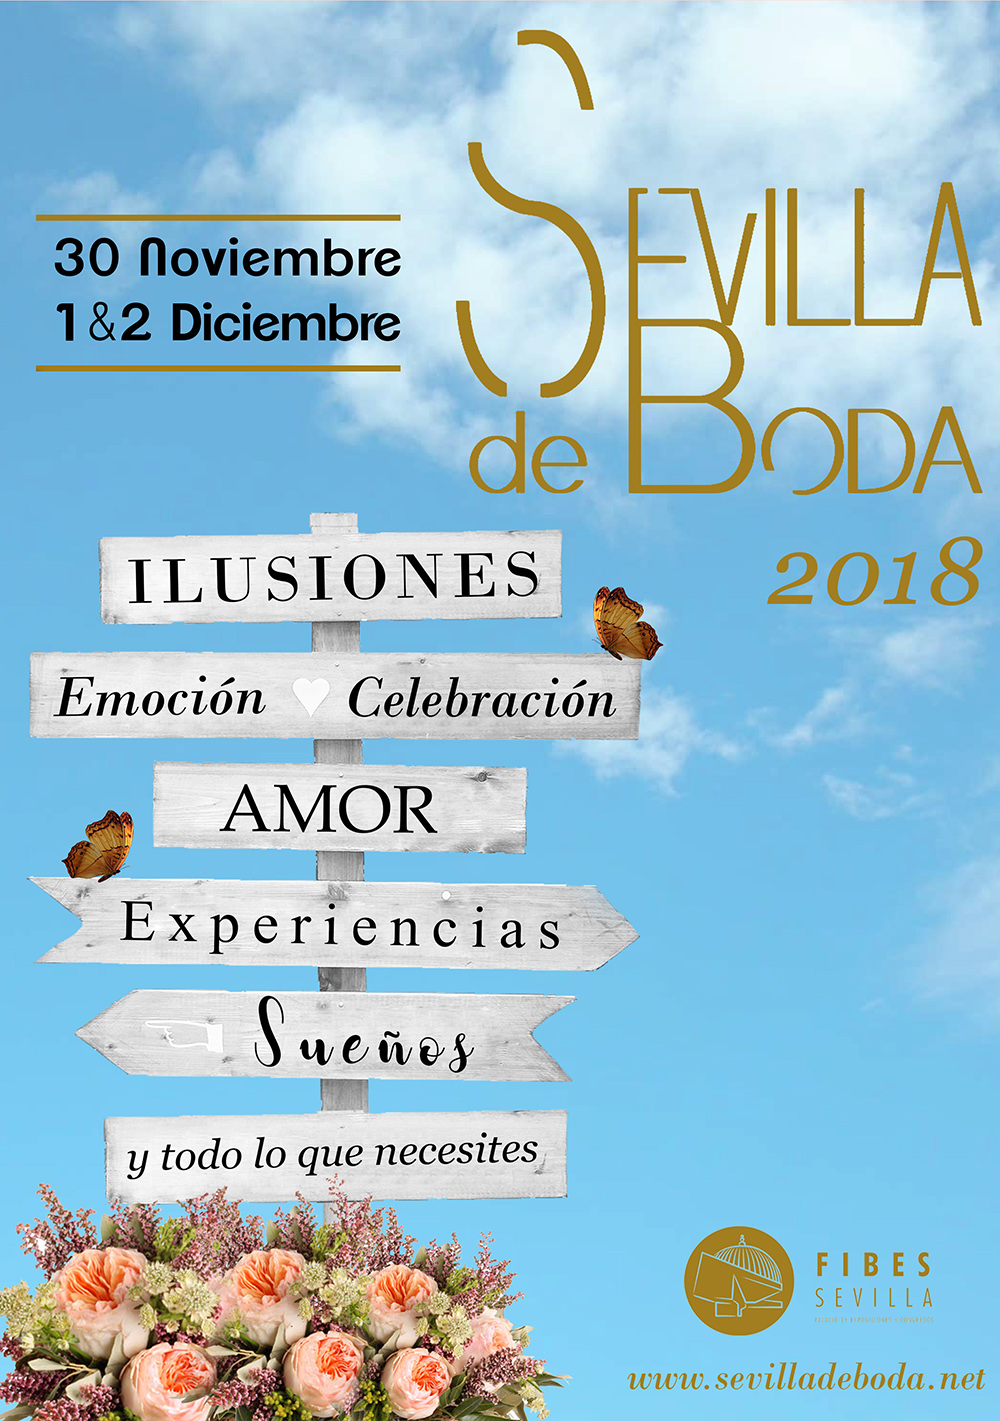 Sevilla de Bodas en Fibes 2018